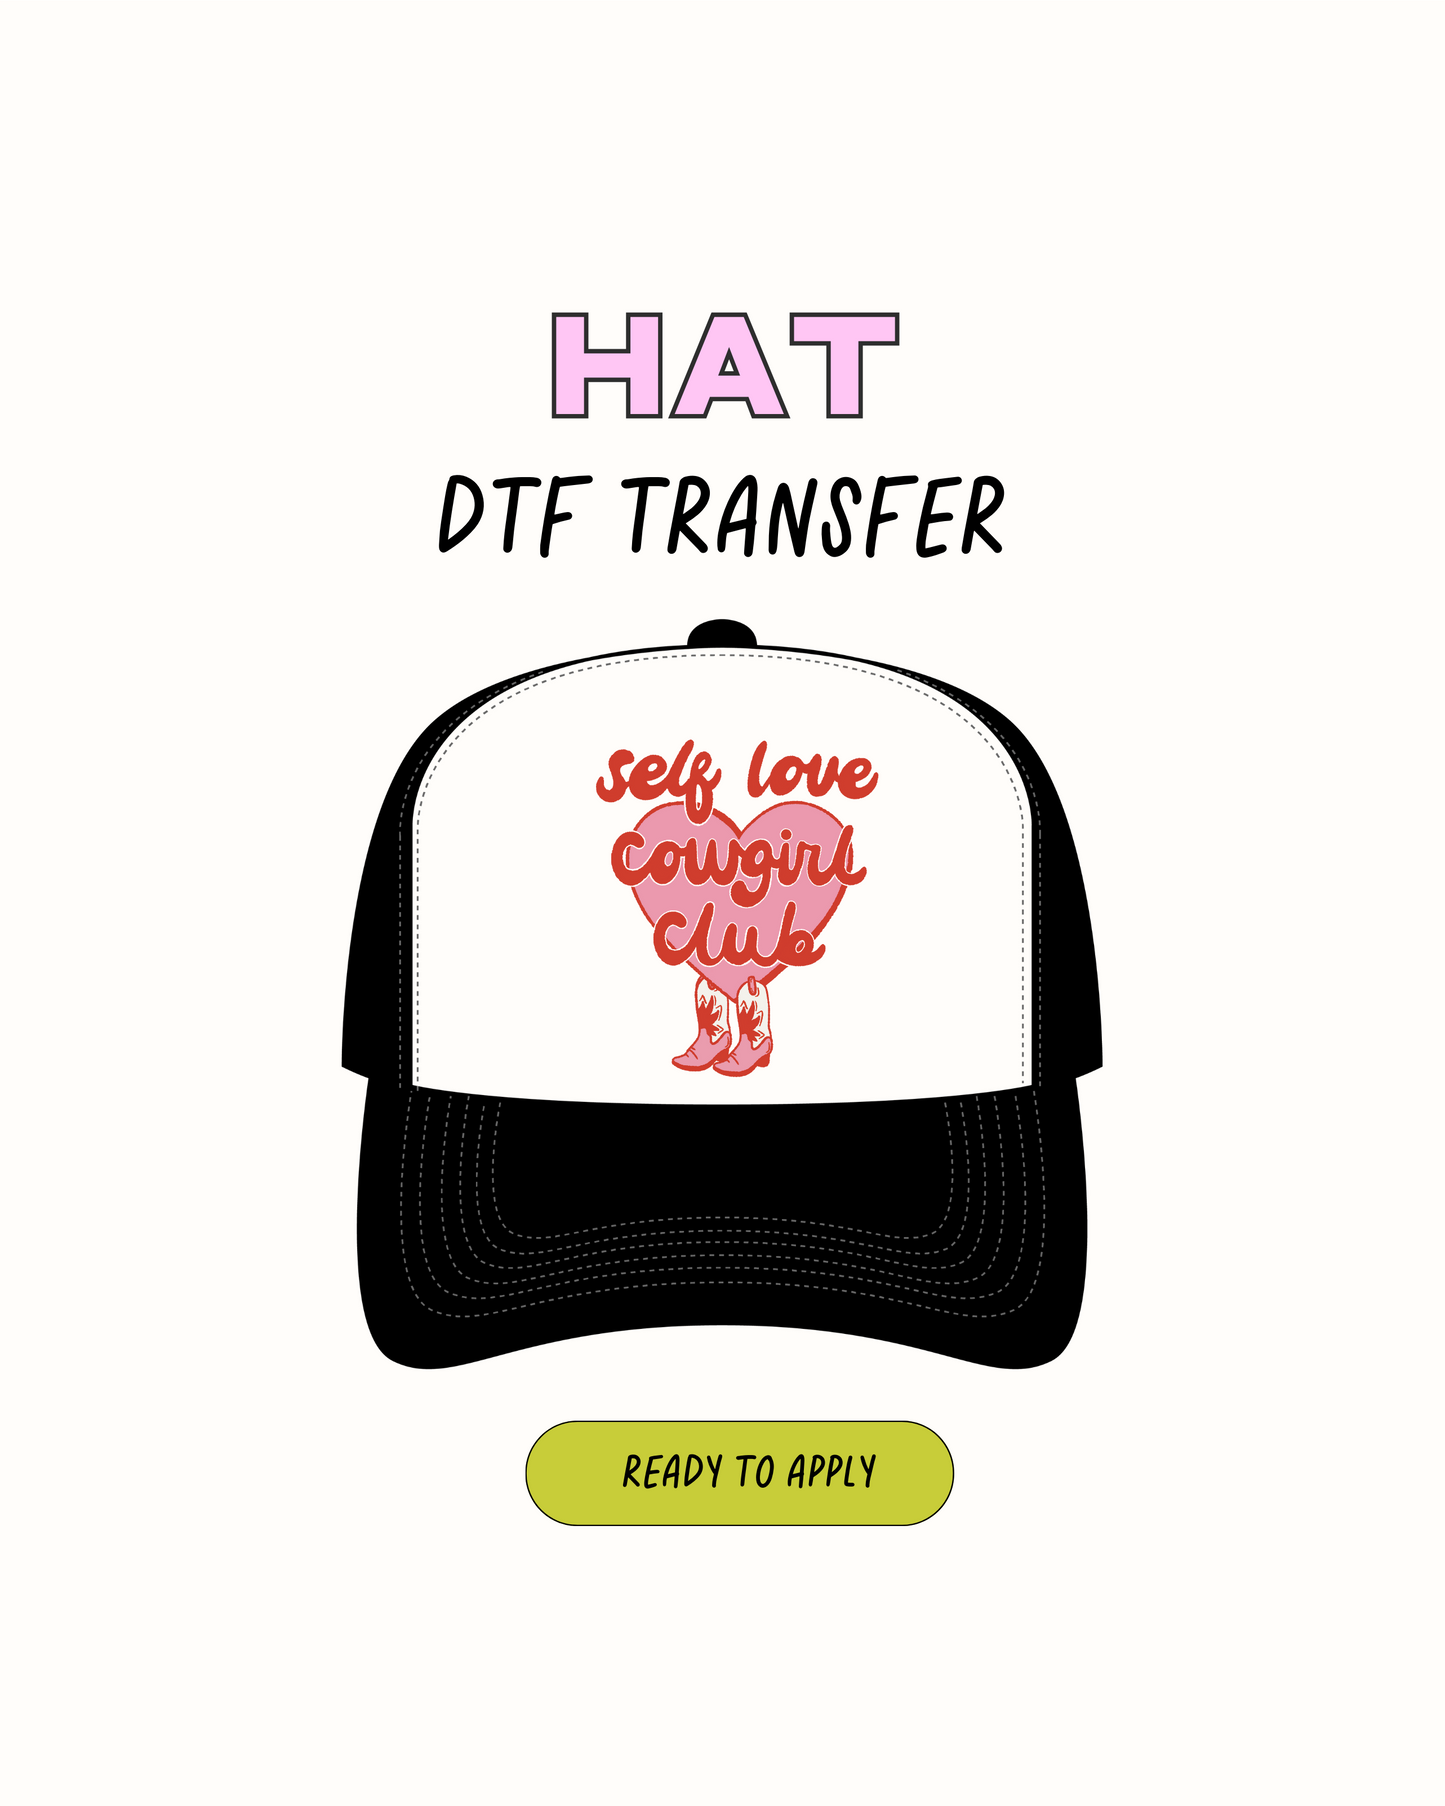 Club de amor propio - Transferencias de sombreros DTF 